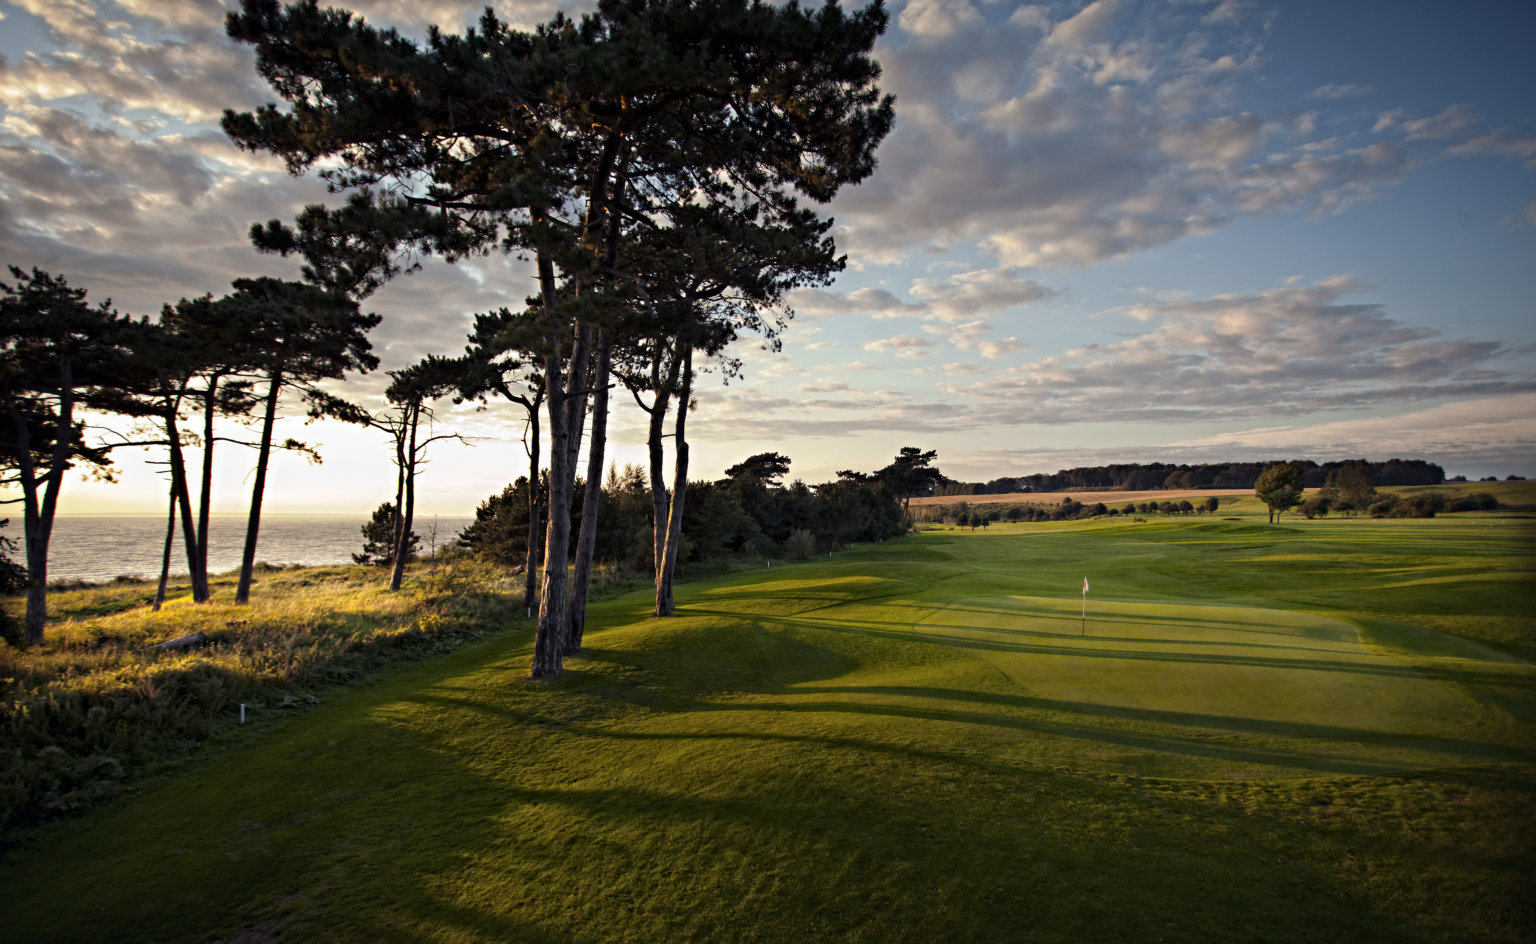 Landskrona golfbana vid havet, mellan golfbanan och havet står några träd.